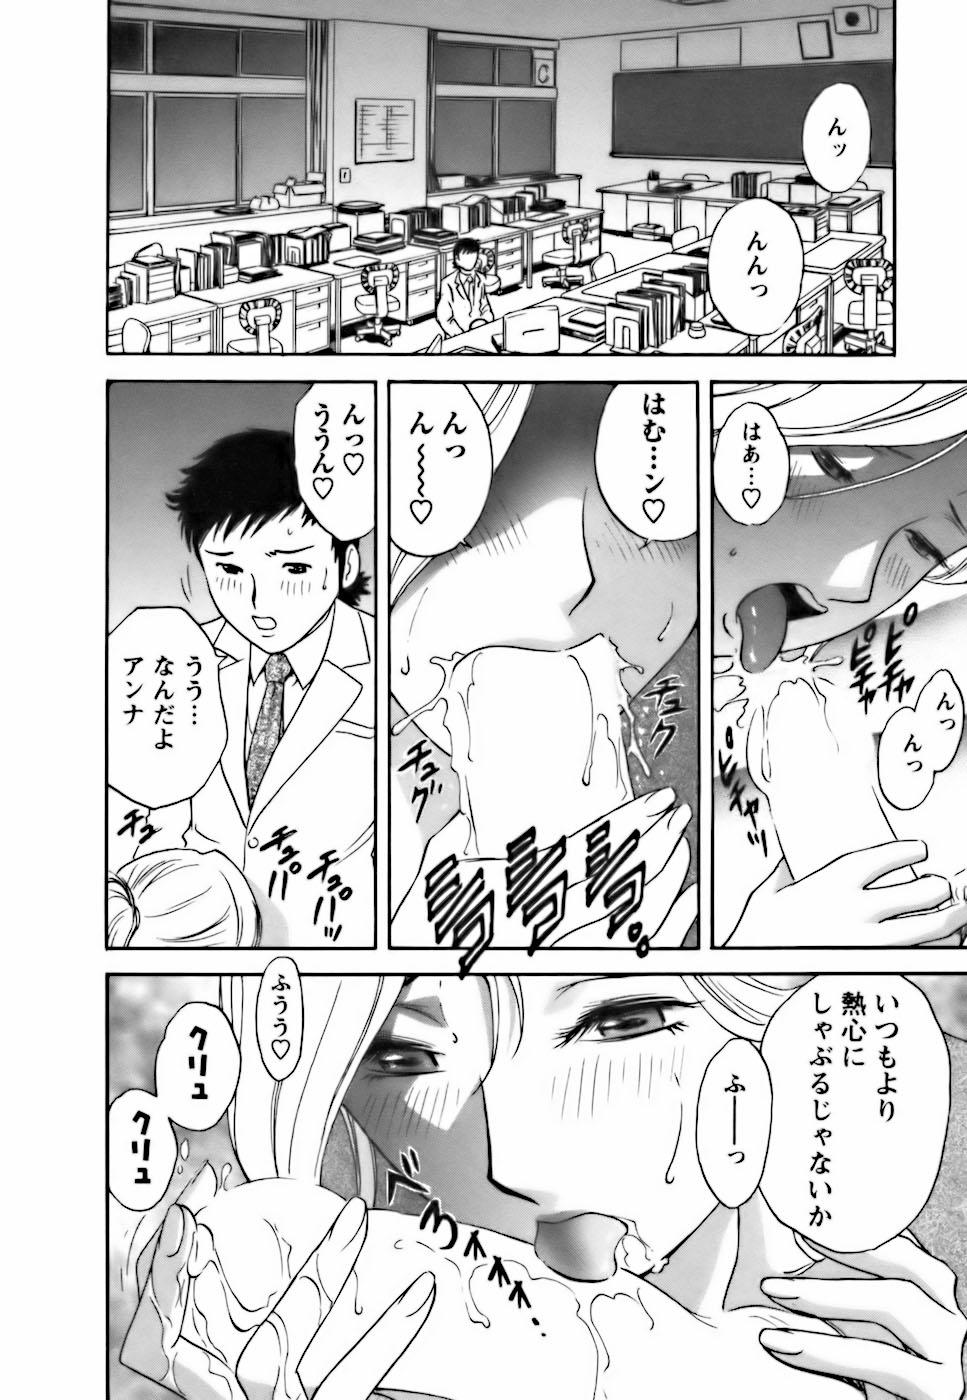 [Hidemaru] Mo-Retsu! Boin Sensei (Boing Boing Teacher) Vol.3 177